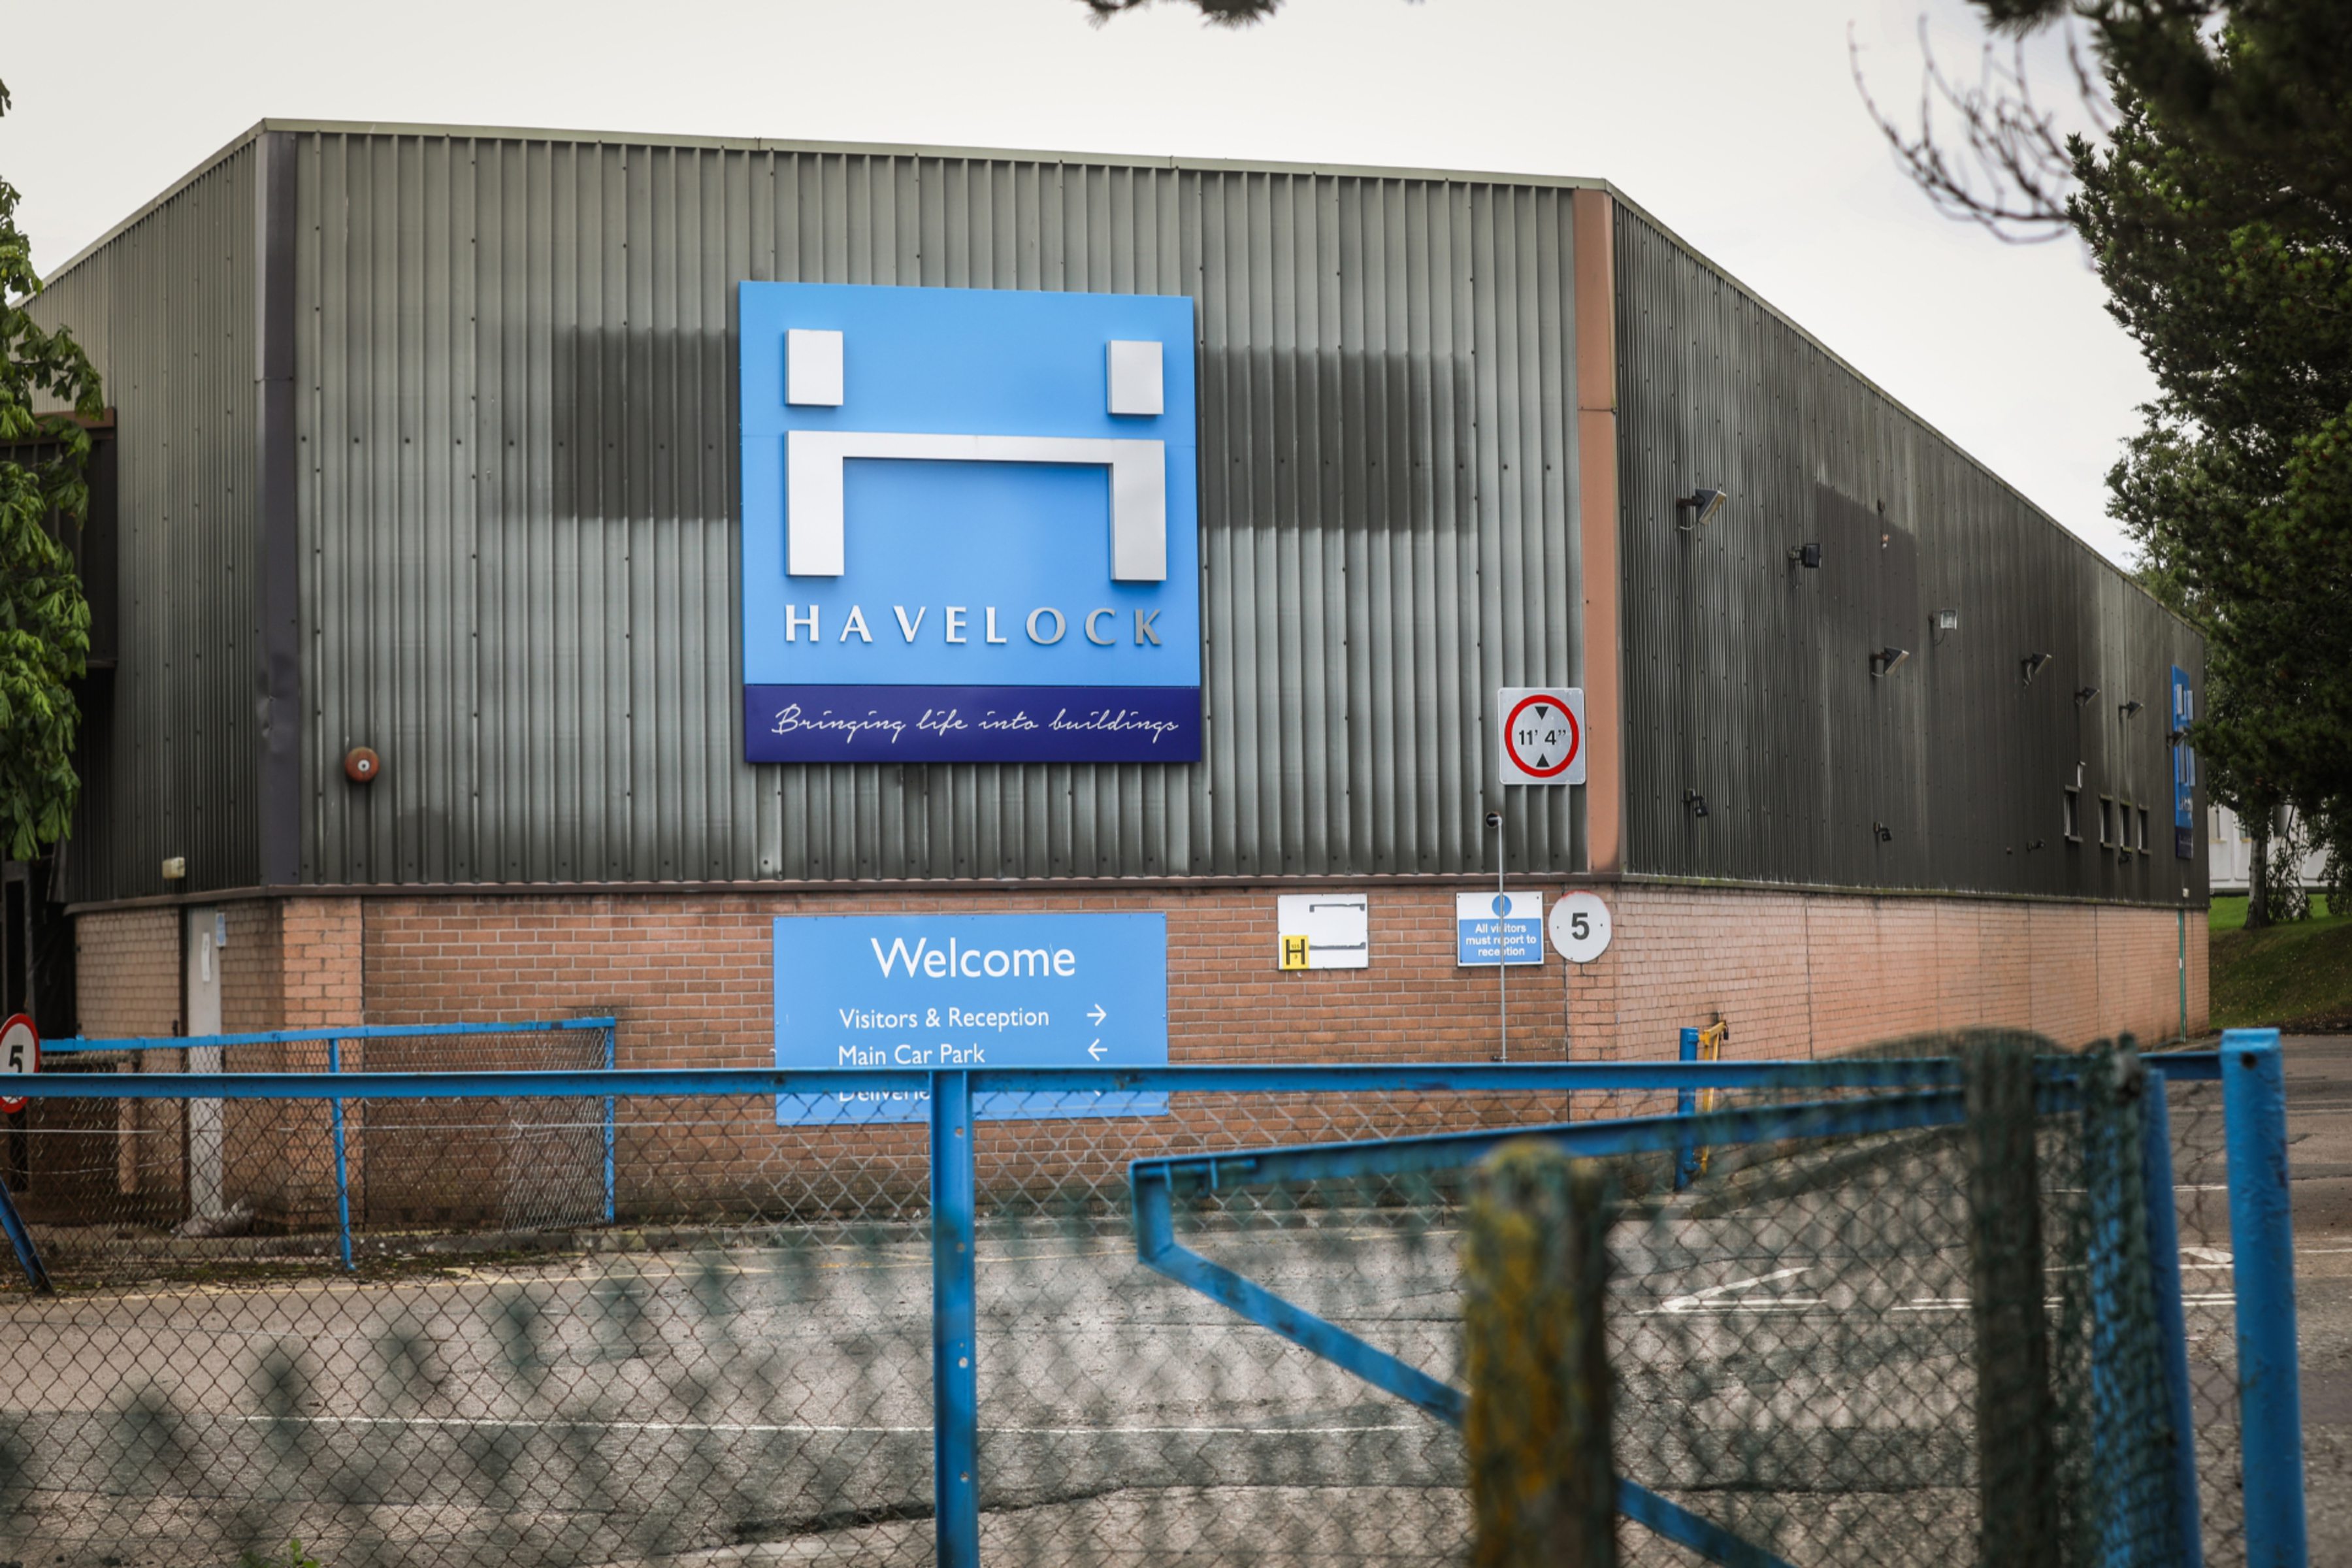 Havelock HQ in Kirkcaldy